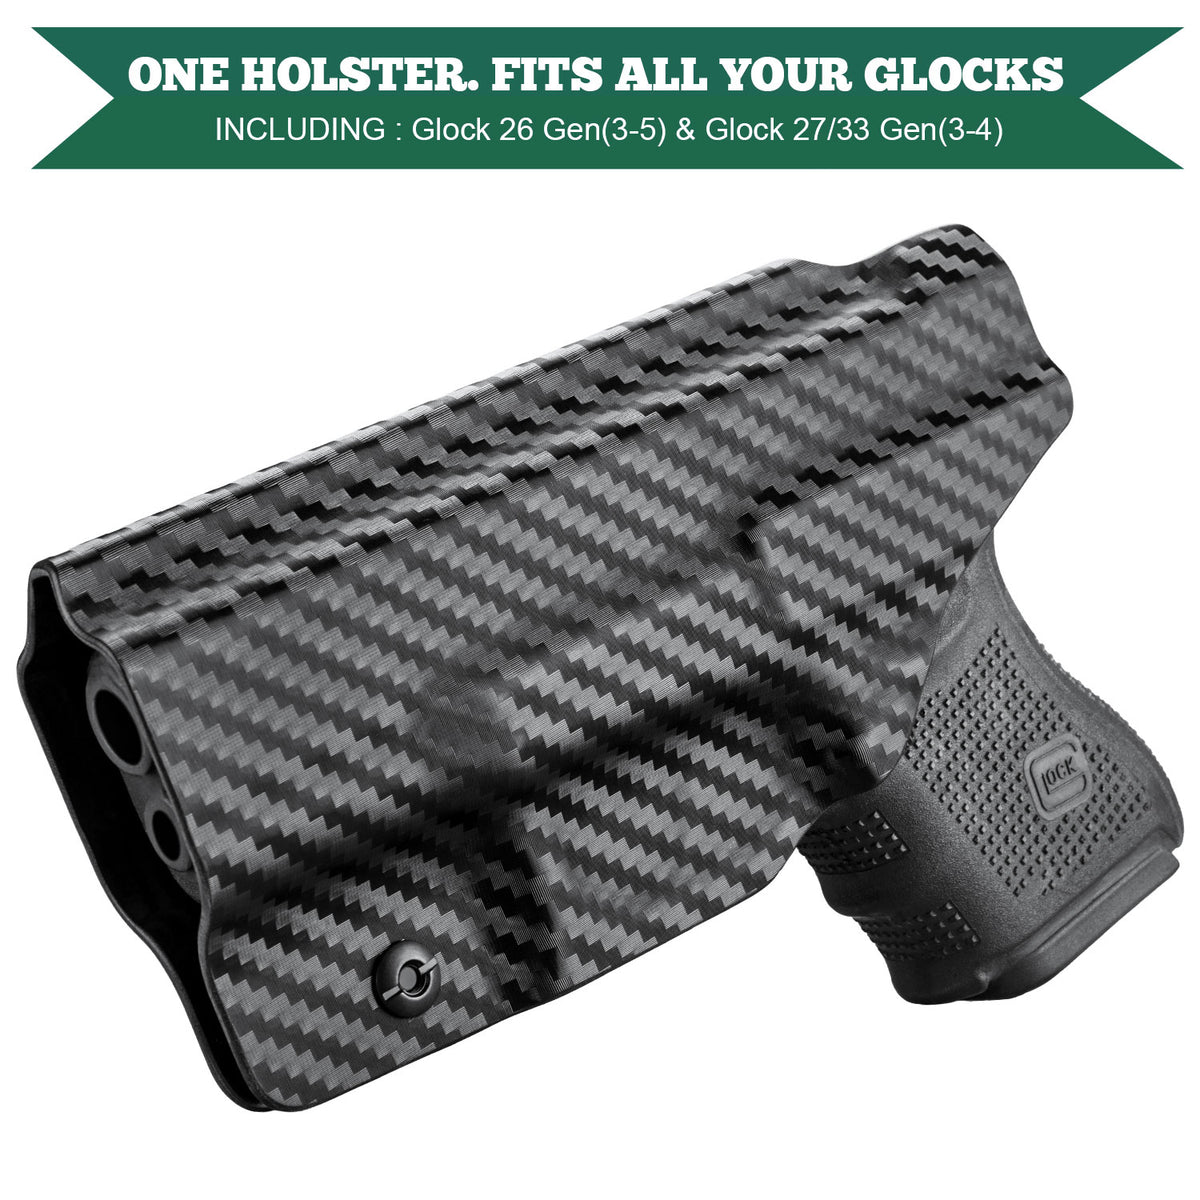 Carbon Fiber Kydex IWB Holster for Glock 26 Gen 3-5/27/33 Gen 3-4  | WARRIORLAND